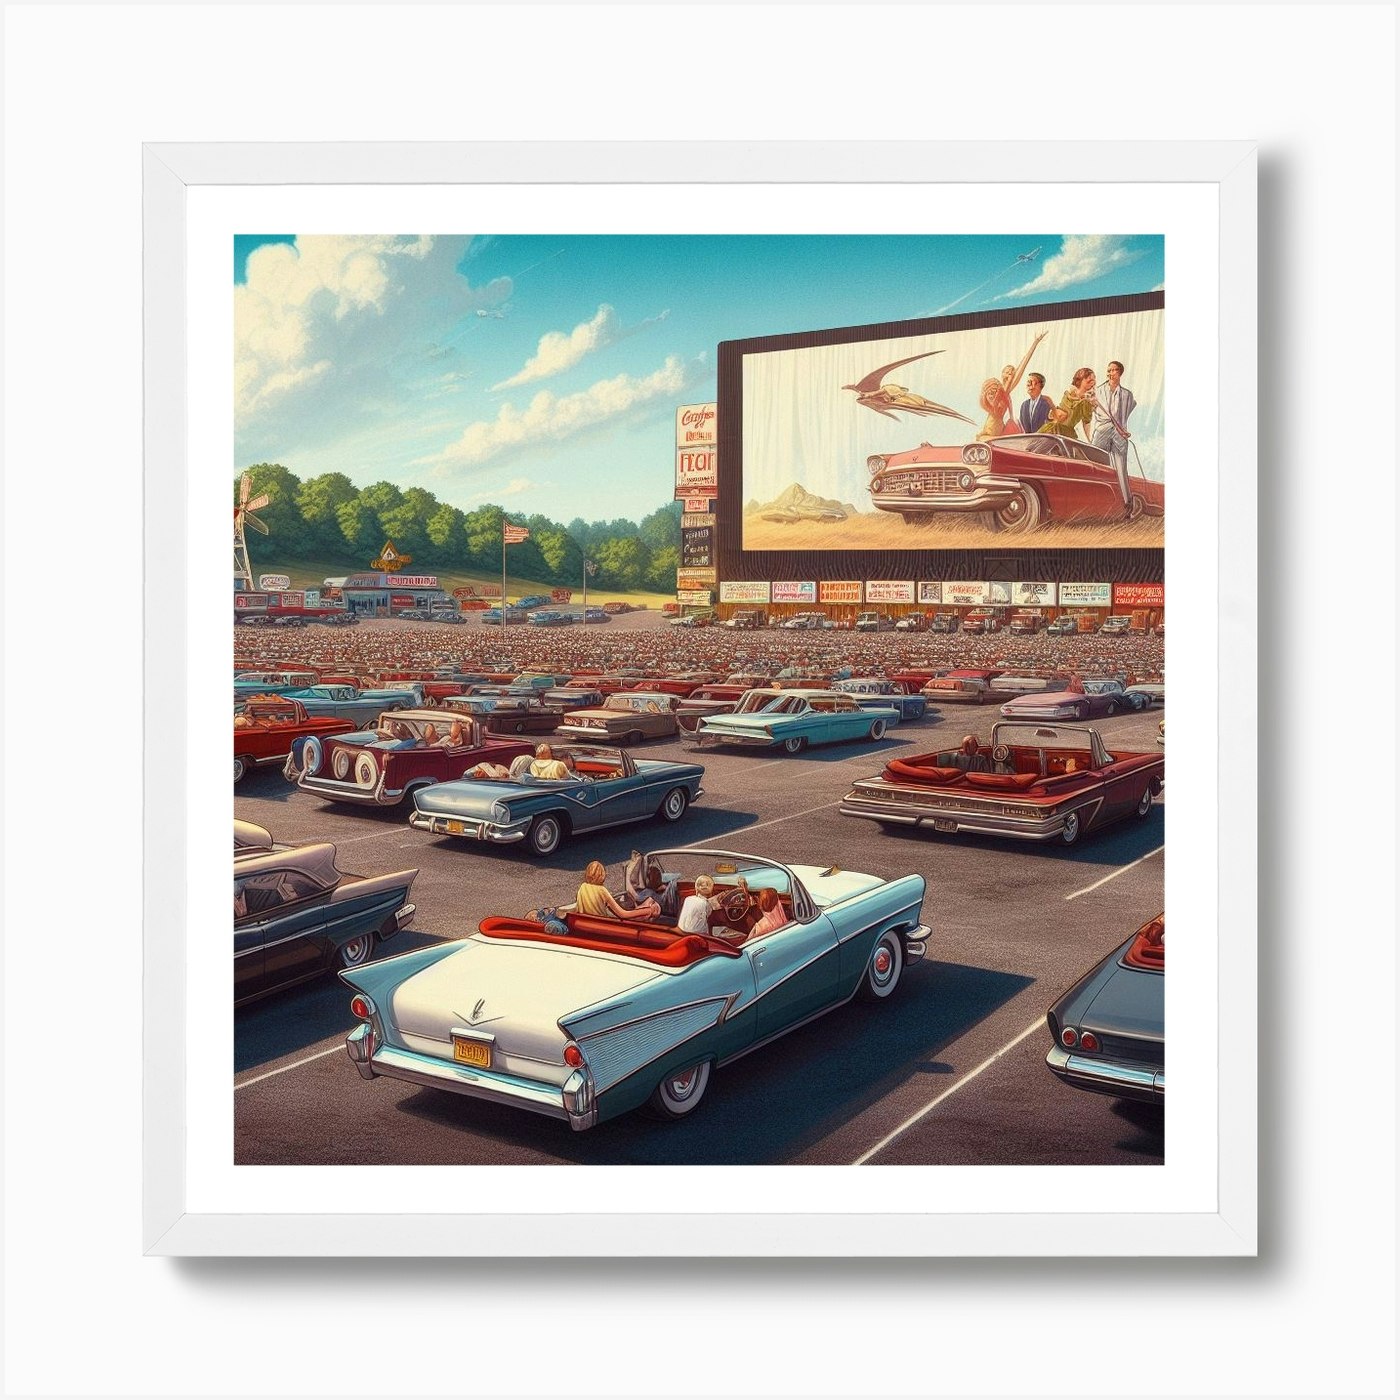 LOUIS VUITTON CLASSIC - Classic Cars - A poster Parc de…